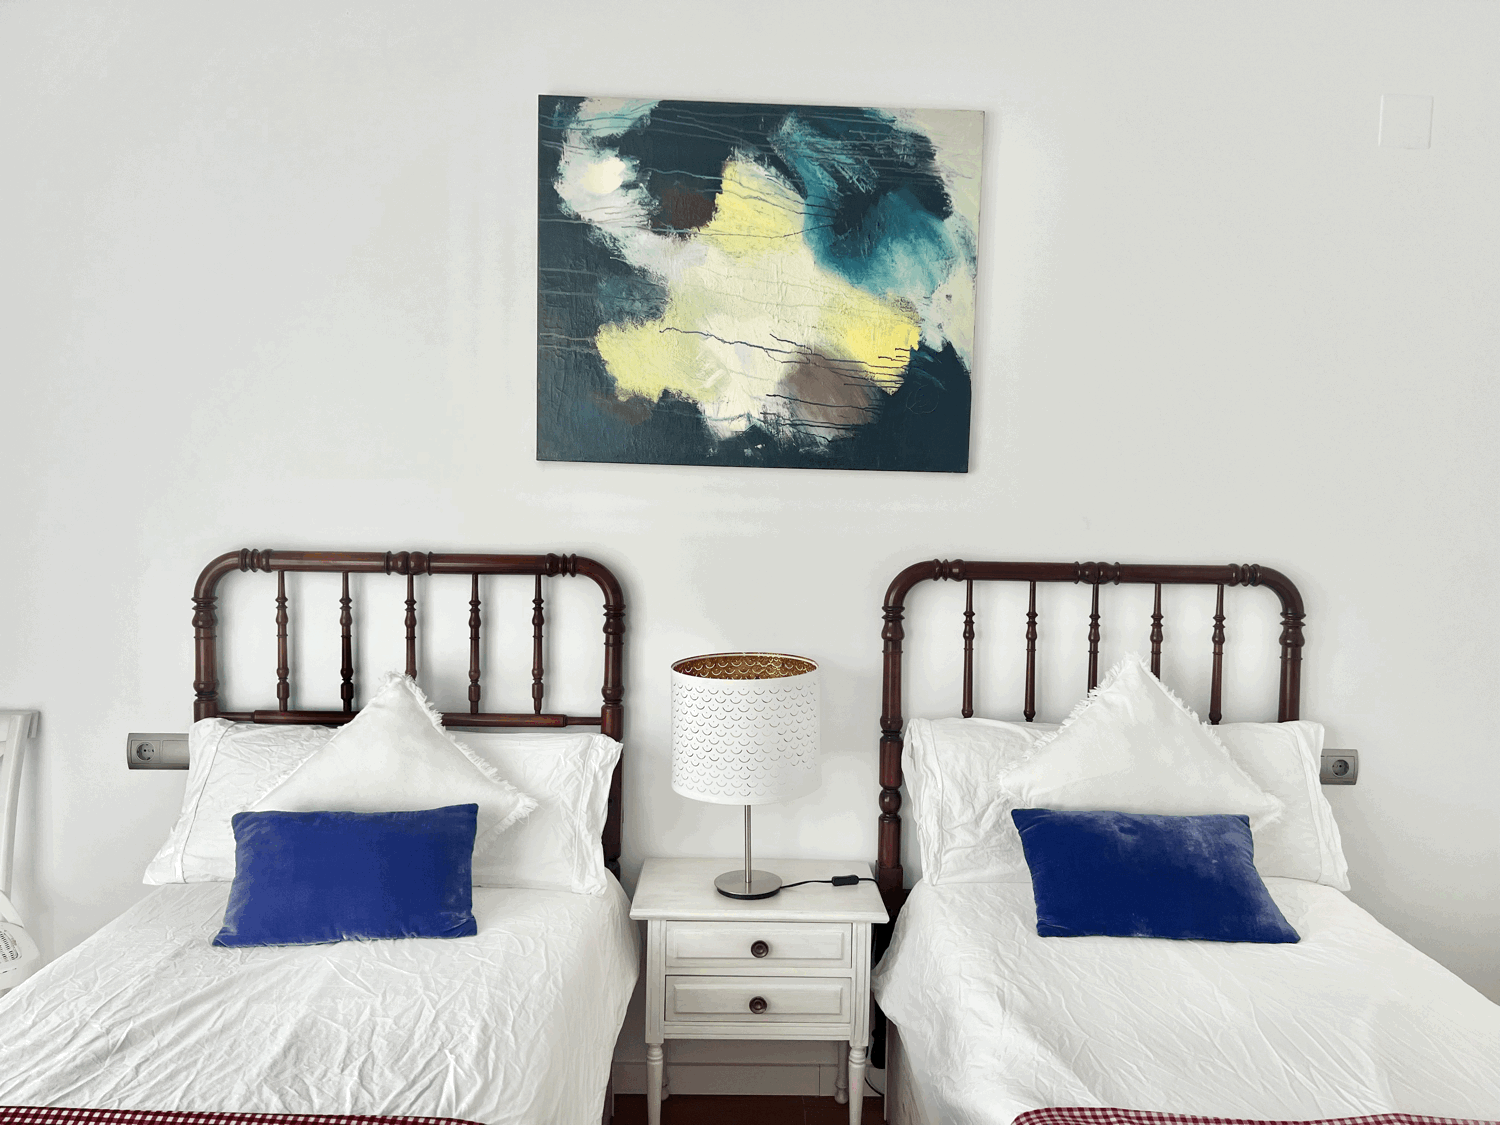 Exclusivo apartamento de dos dormitorios en primera linea de playa en Alcaidesa